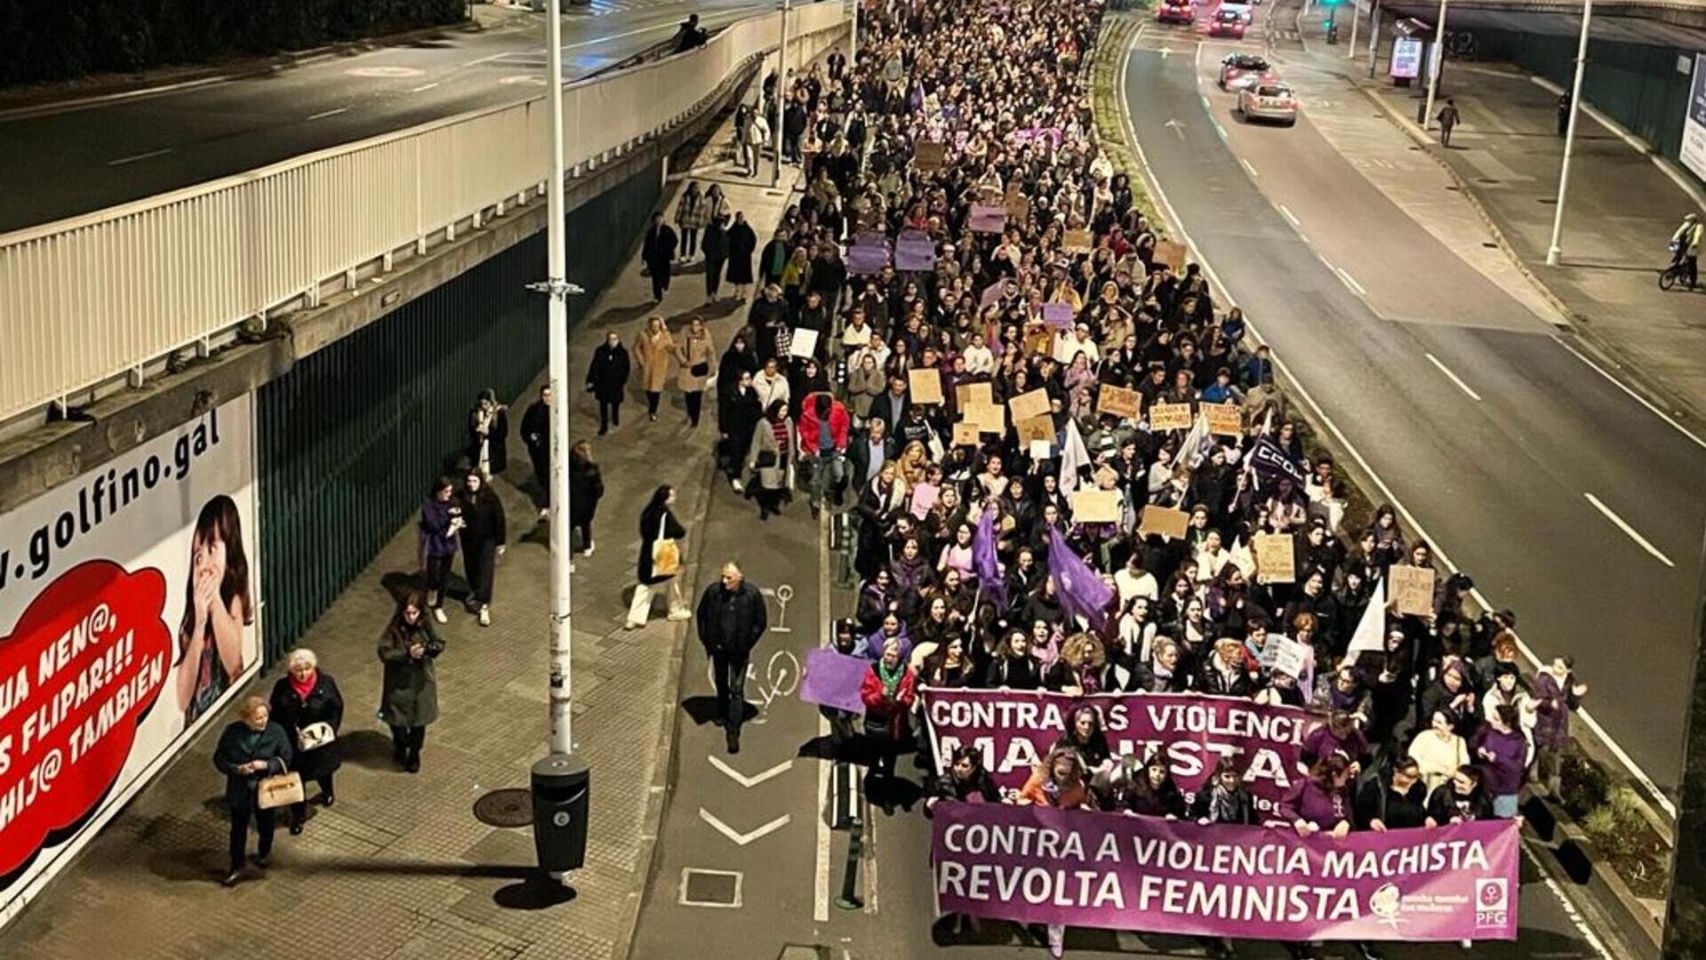 Manifestación del 8-M en A Coruña.